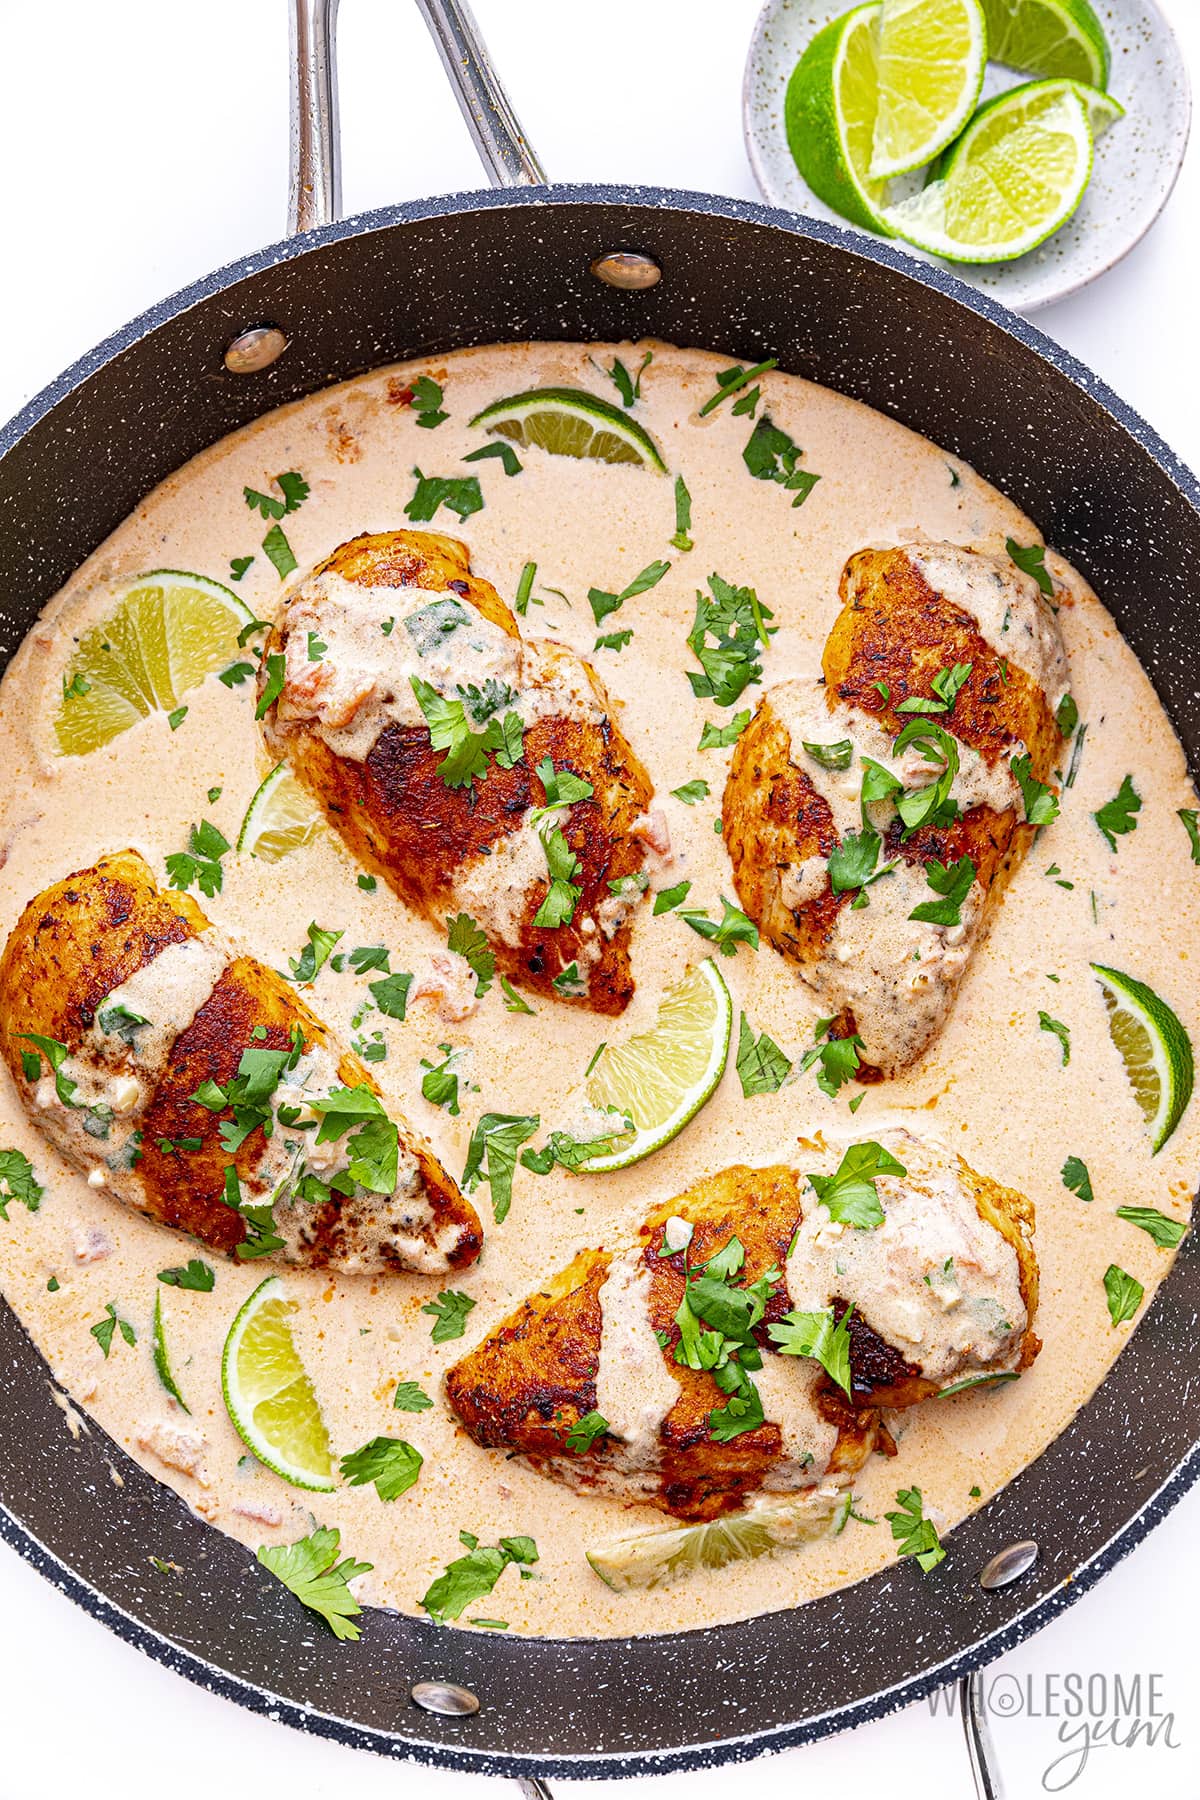 Finish the Cajun chicken recipe in the skillet.